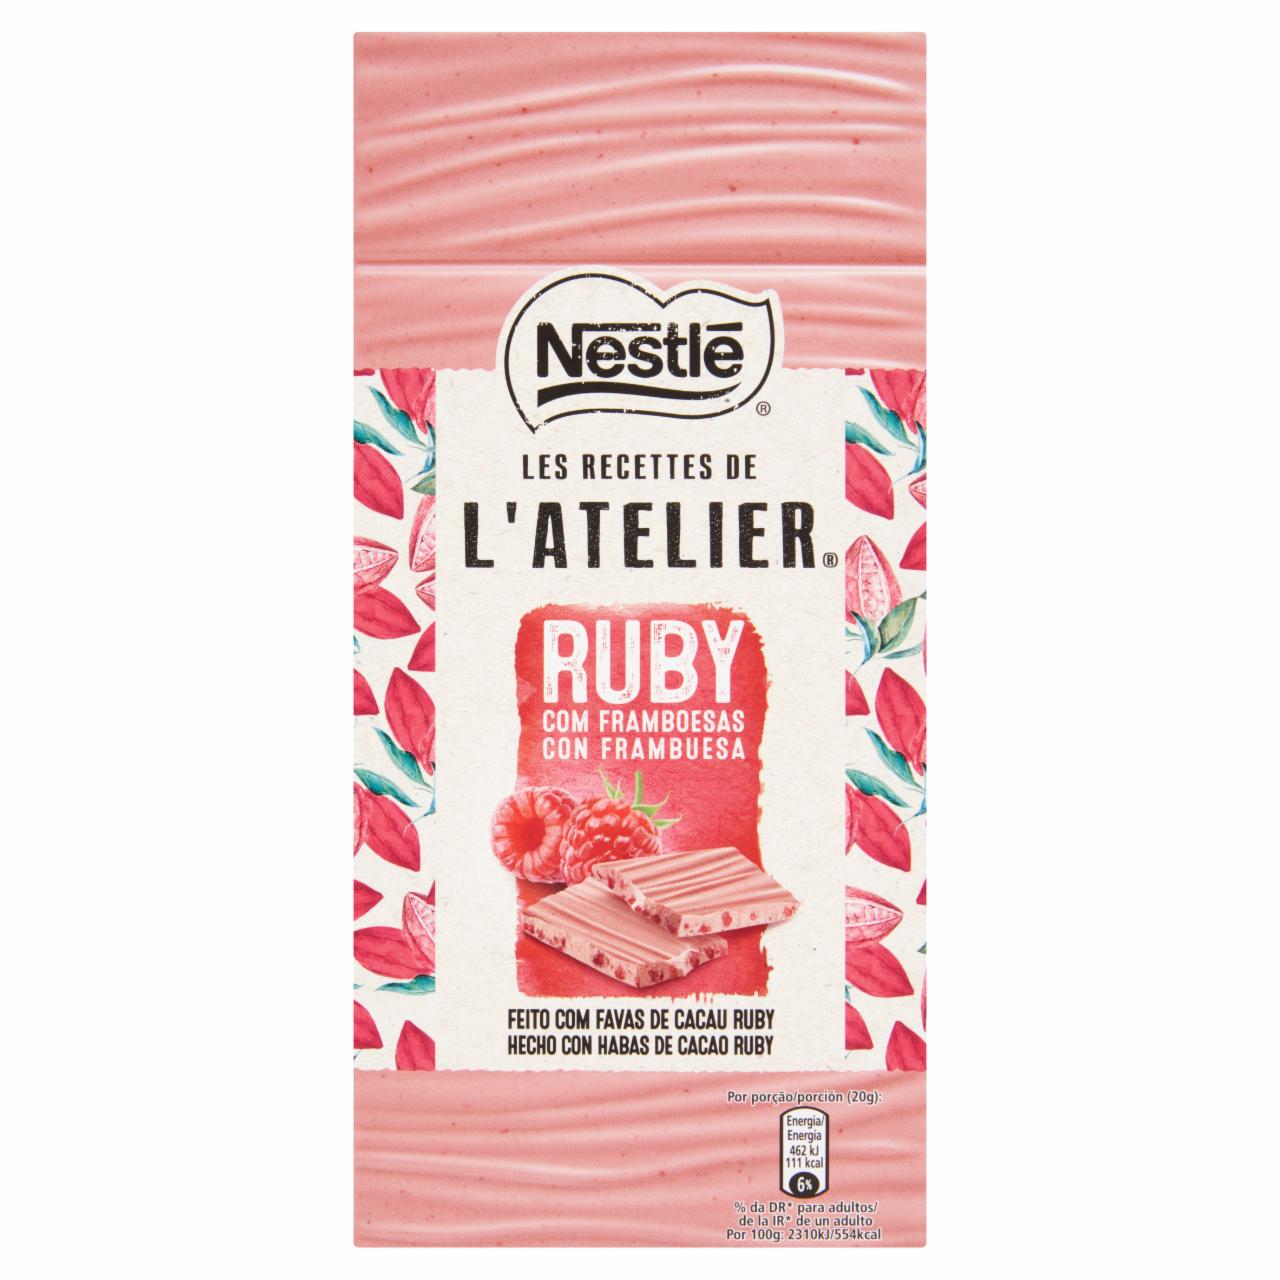 Képek - Nestlé L'Atelier Ruby mártócsokoládé, fagyasztva szárított málnával 100 g